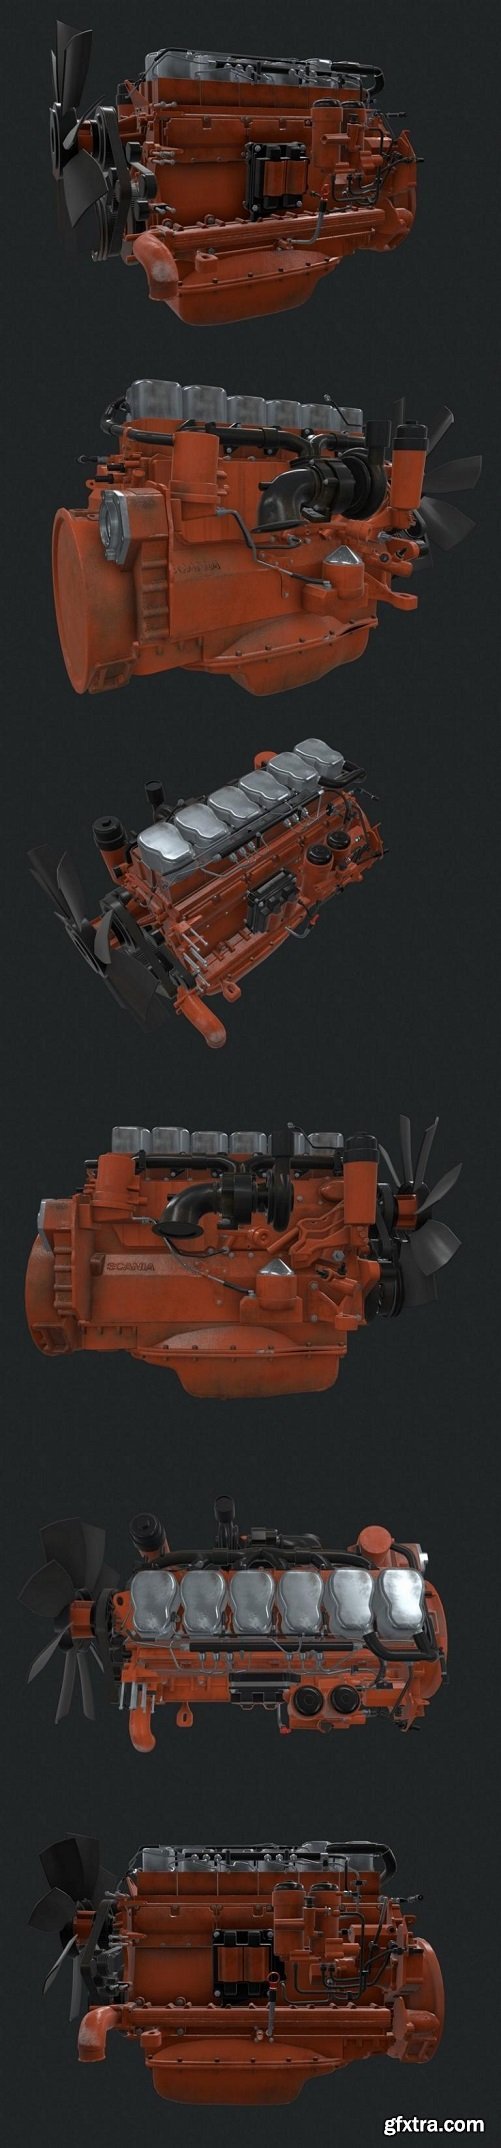 Car engine Scania